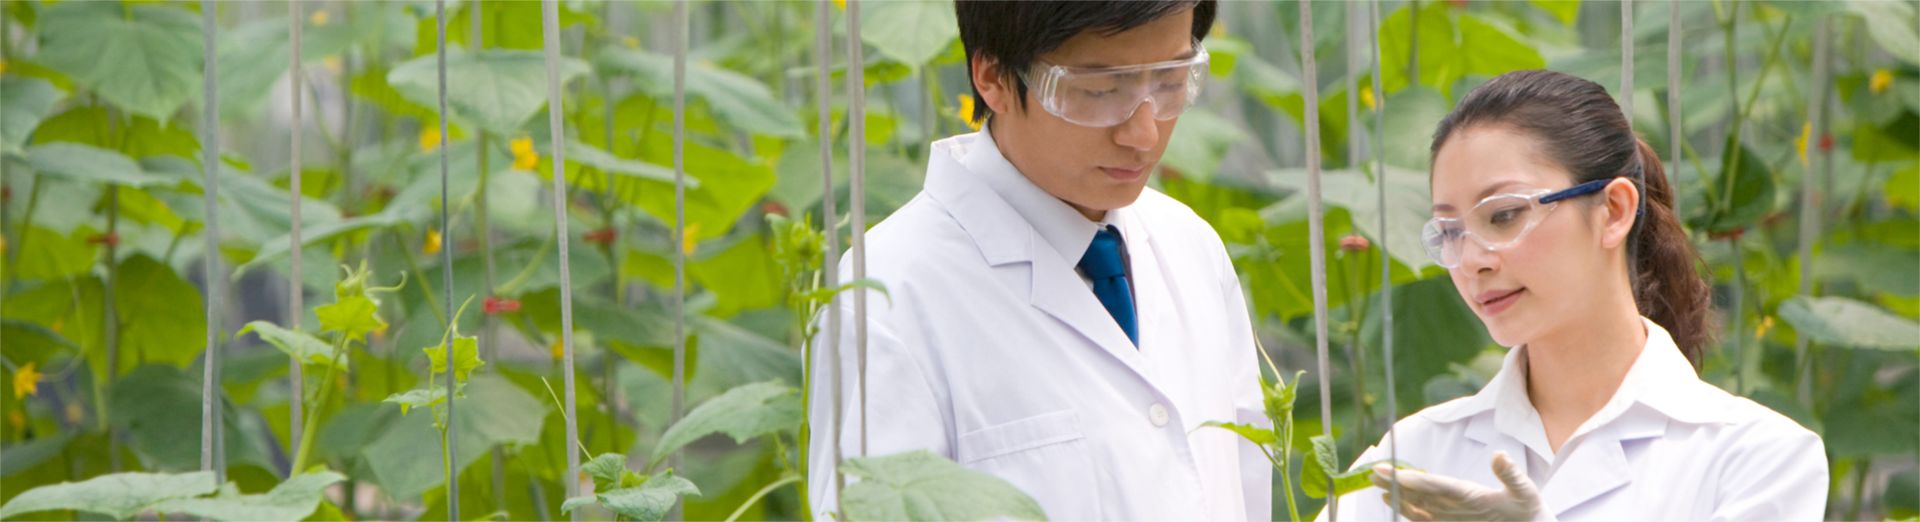 Naukowcy badający rośliny